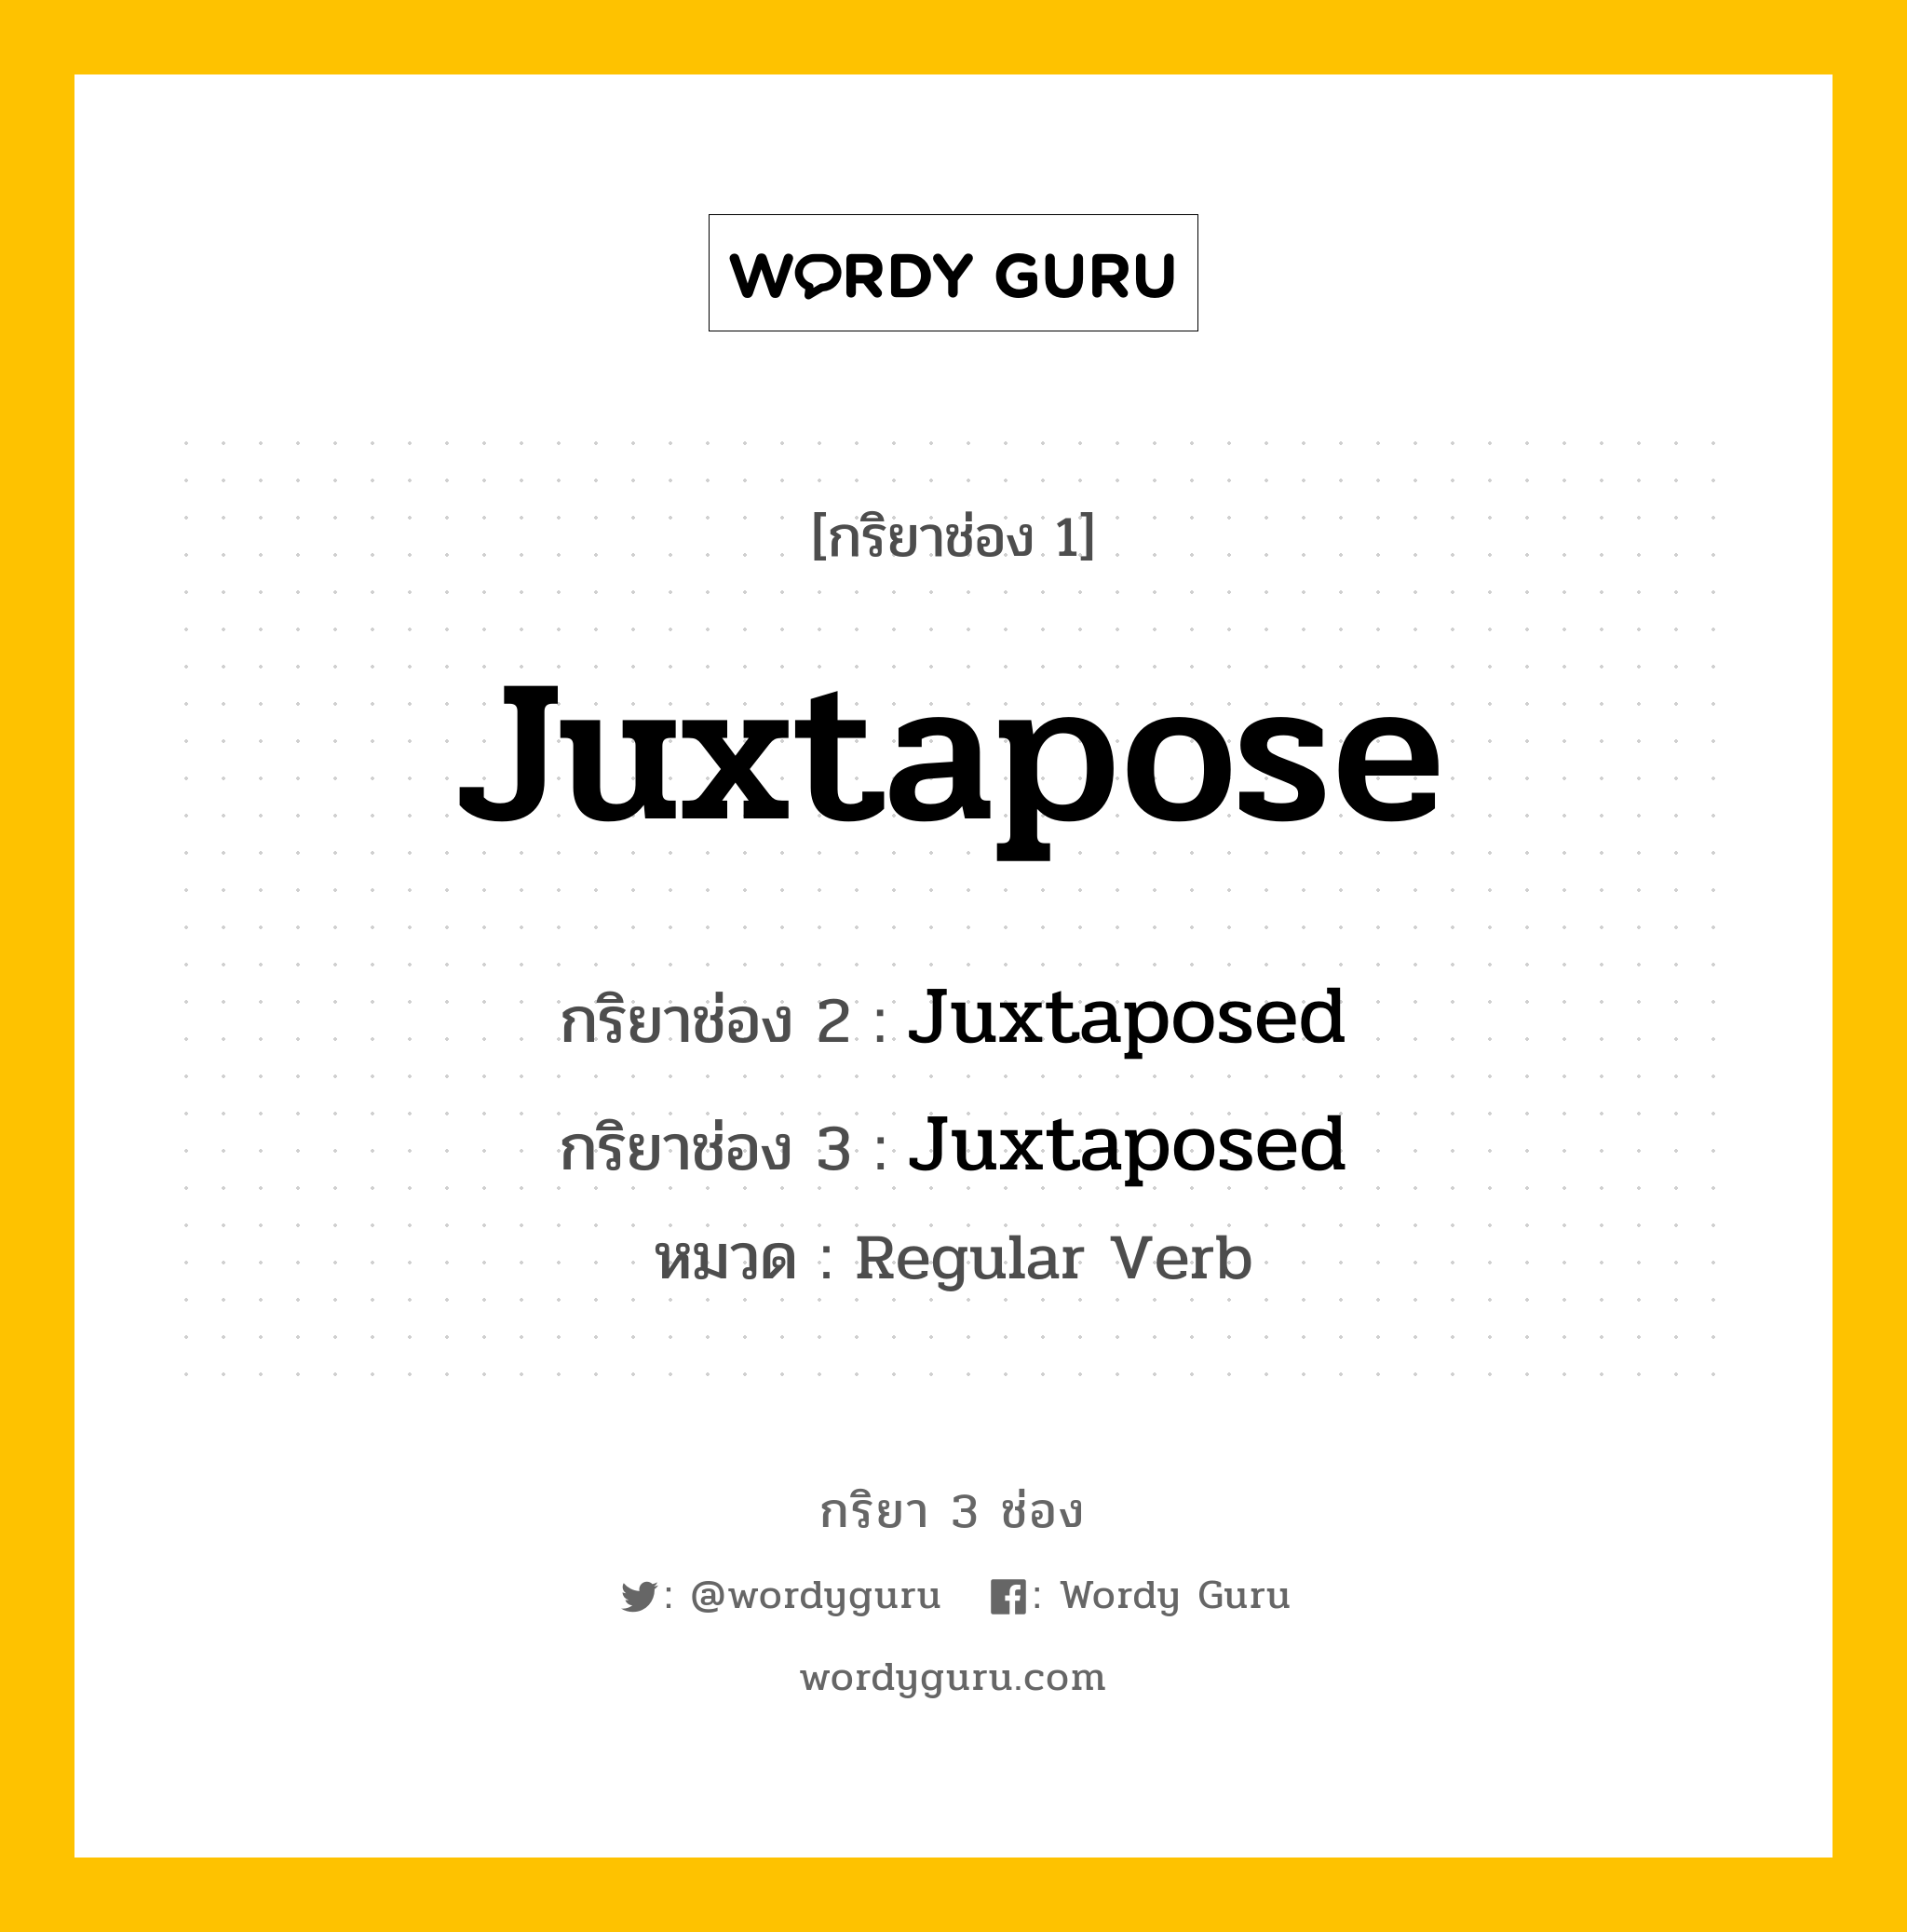 กริยา 3 ช่อง: Juxtapose ช่อง 2 Juxtapose ช่อง 3 คืออะไร, กริยาช่อง 1 Juxtapose กริยาช่อง 2 Juxtaposed กริยาช่อง 3 Juxtaposed หมวด Regular Verb หมวด Regular Verb